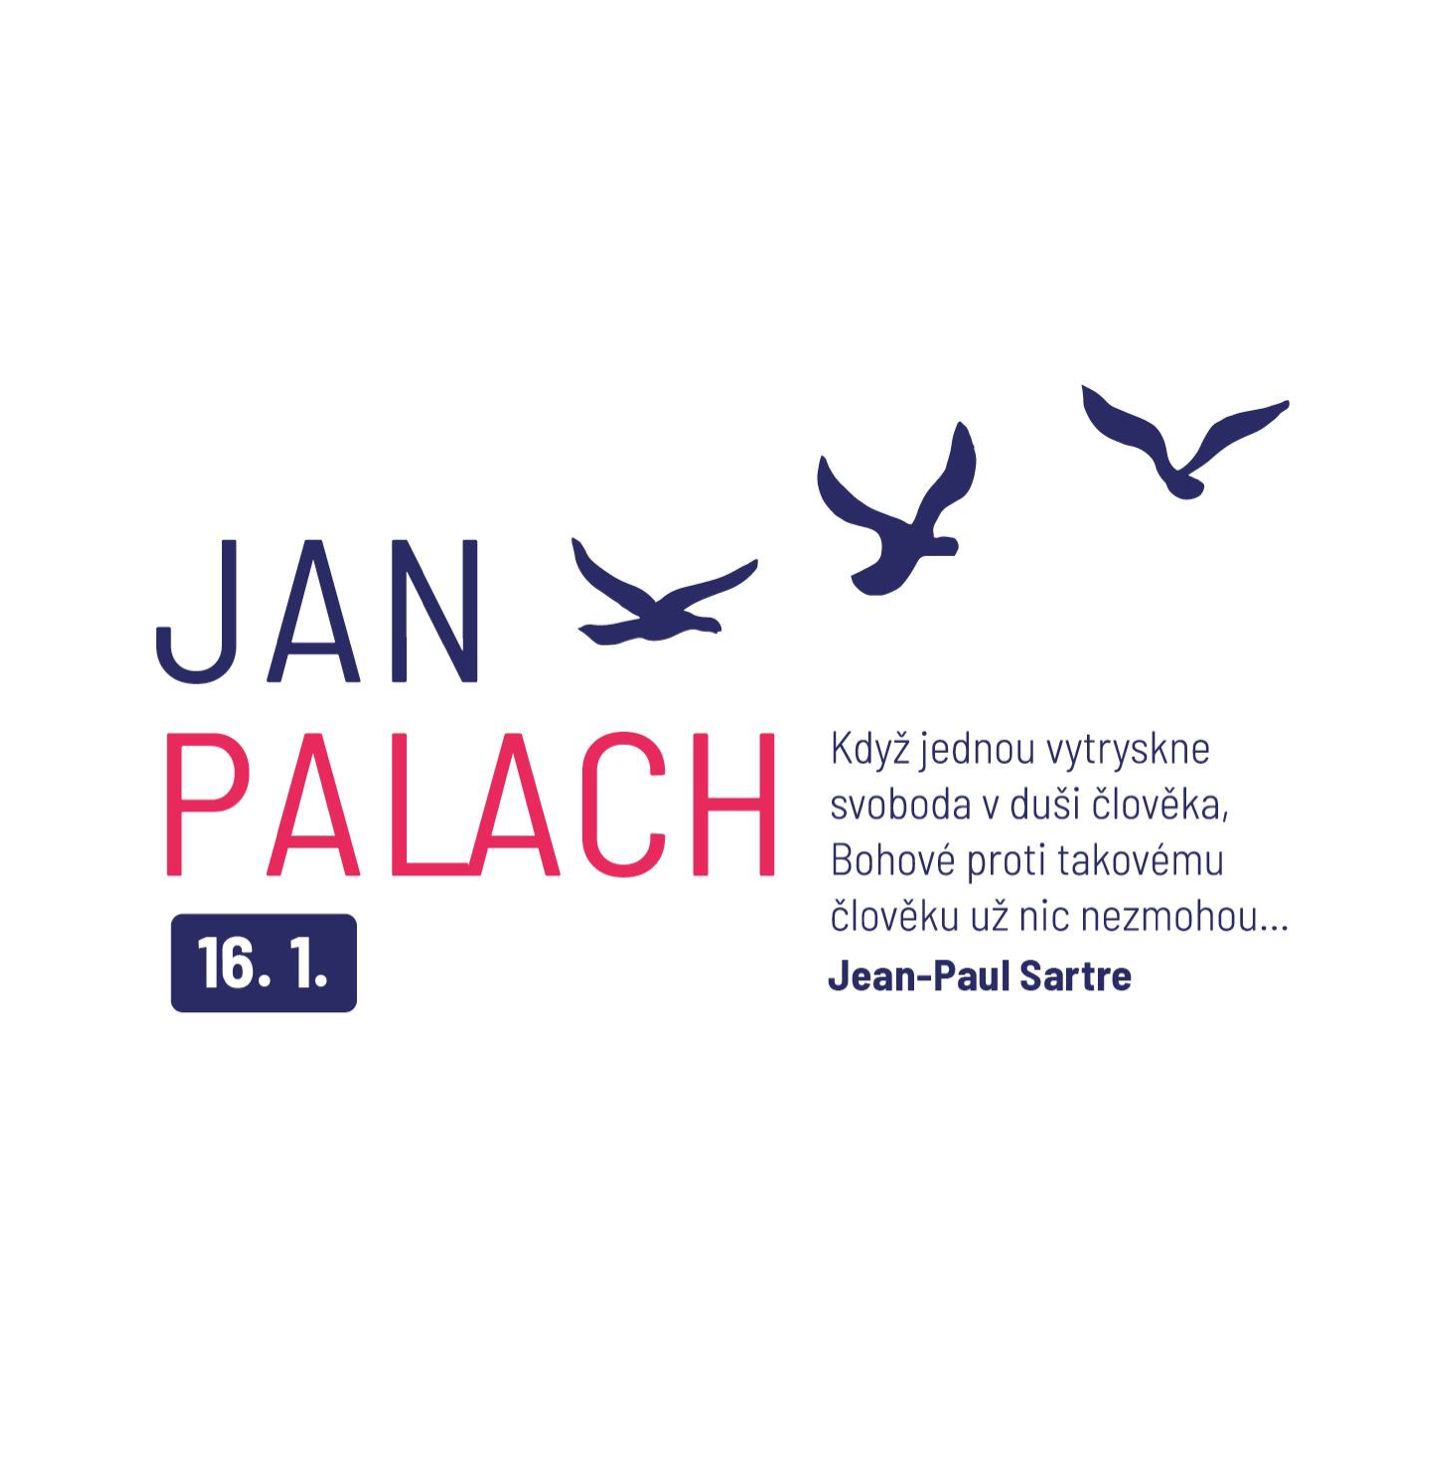 Vzpomínka na Jana Palacha